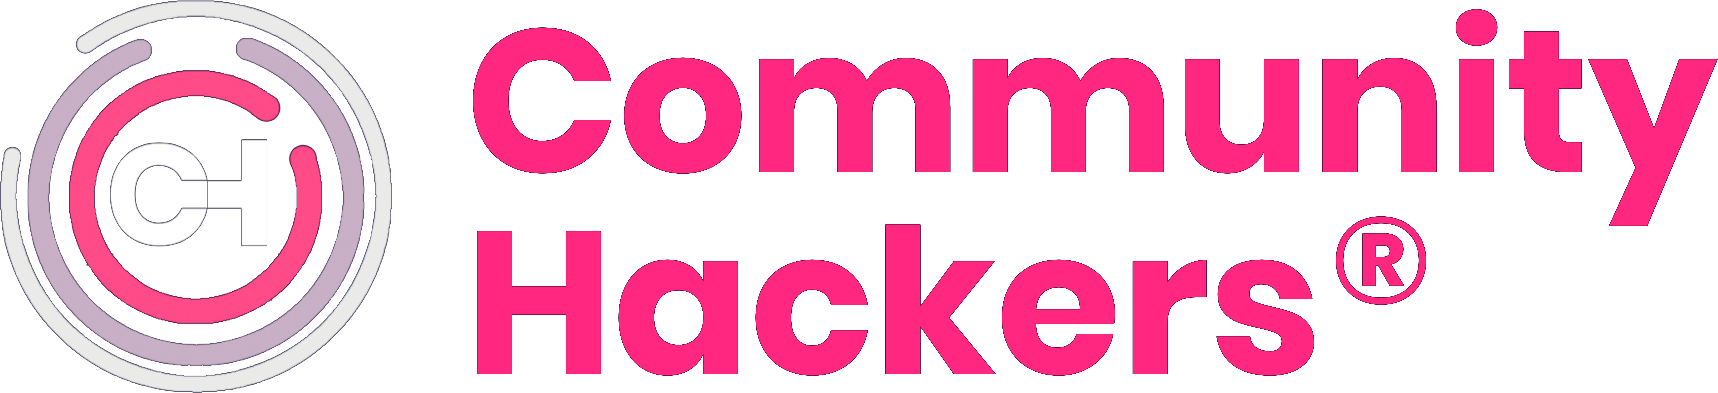 logo pink somos community hackers